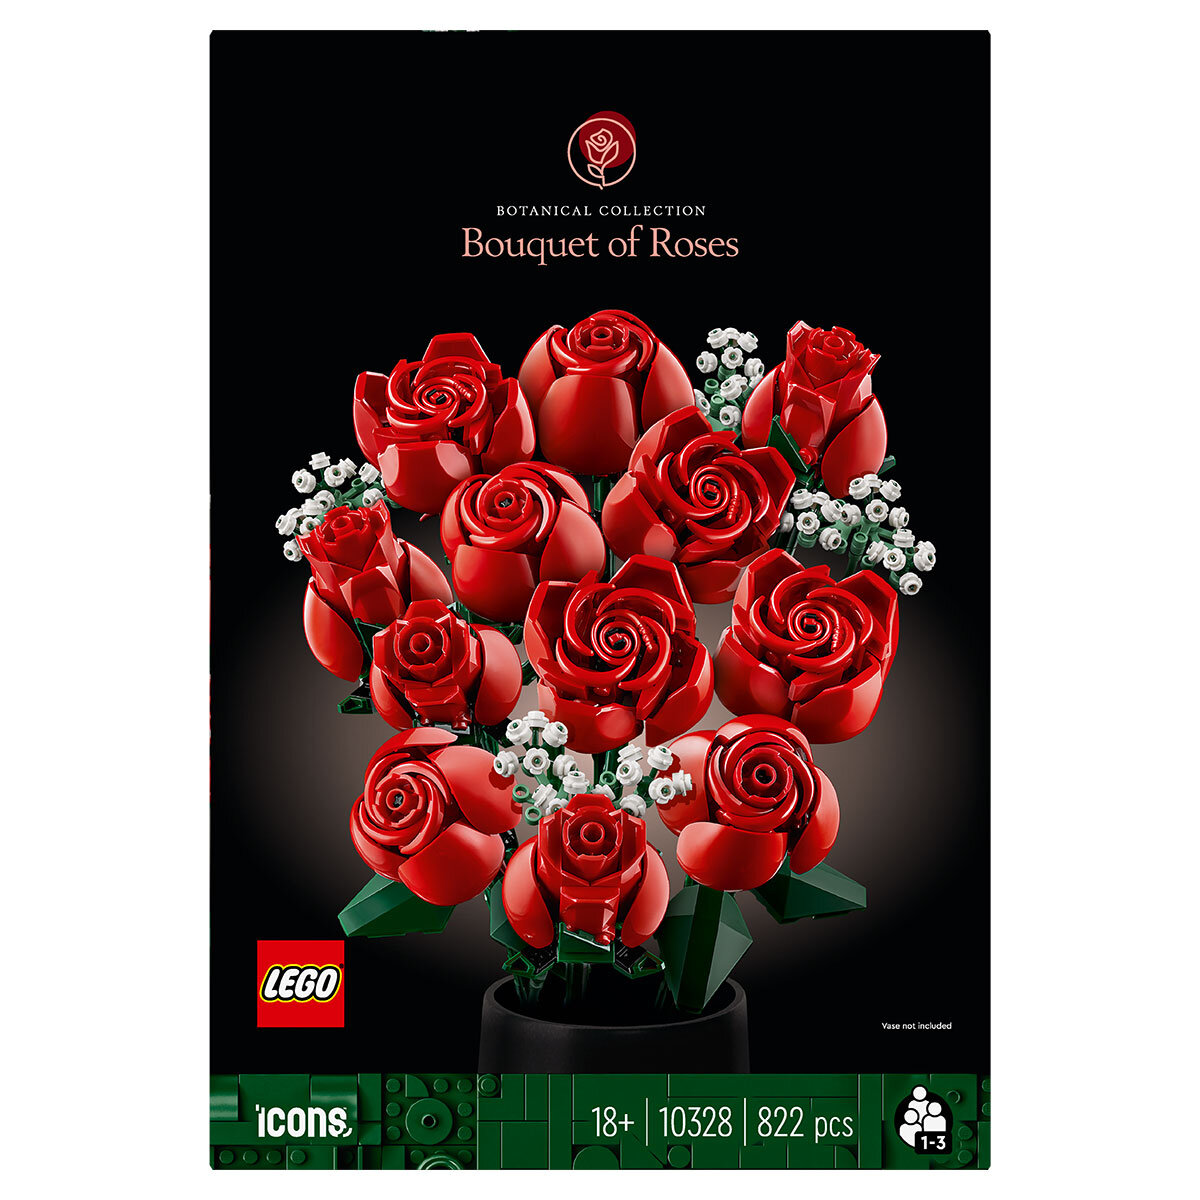 Buy LEGO Botanicals Bouquet of Roses Box Image at Costco.co.uk